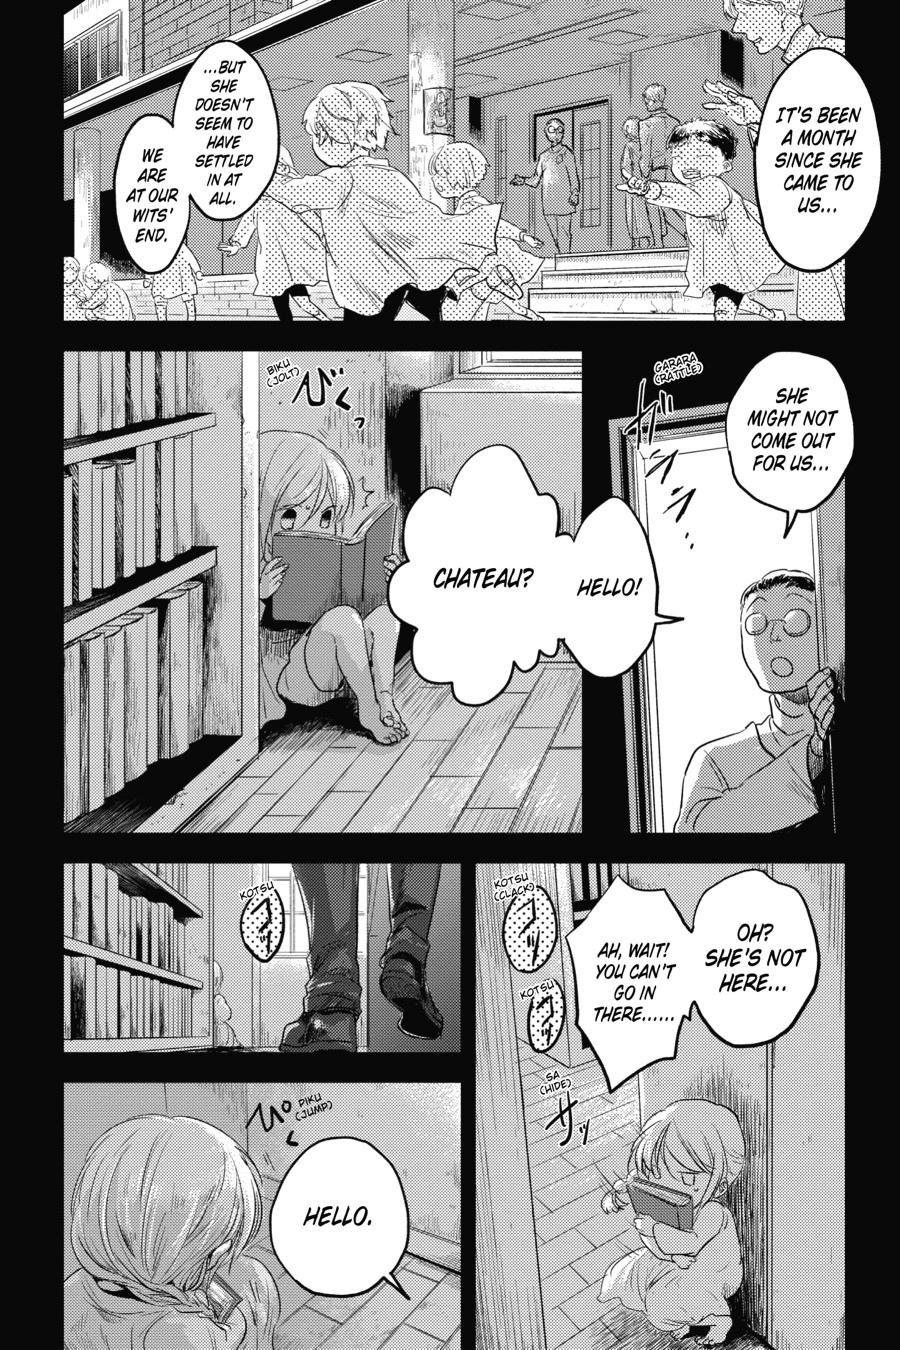 Koroshi Ai Vol.9 Ch.51 Page 17 - Mangago